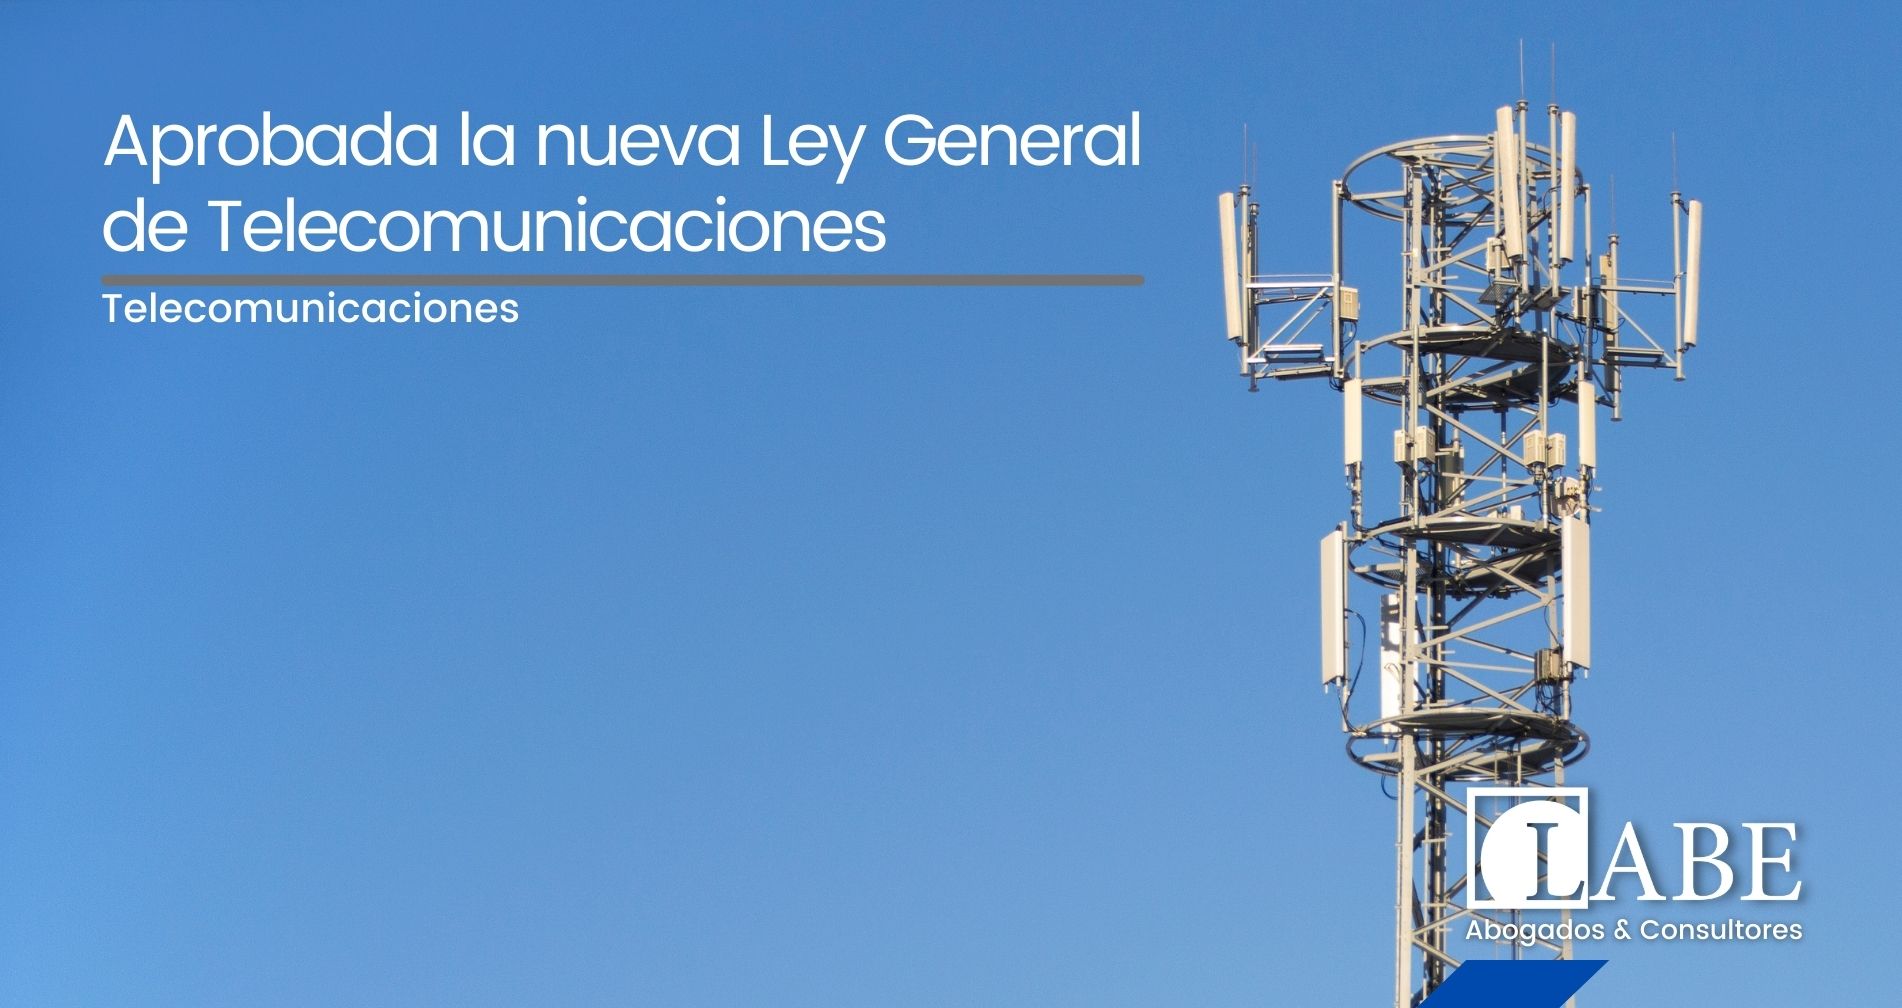 Aprobada la Nueva Ley General de Telecomunicaciones